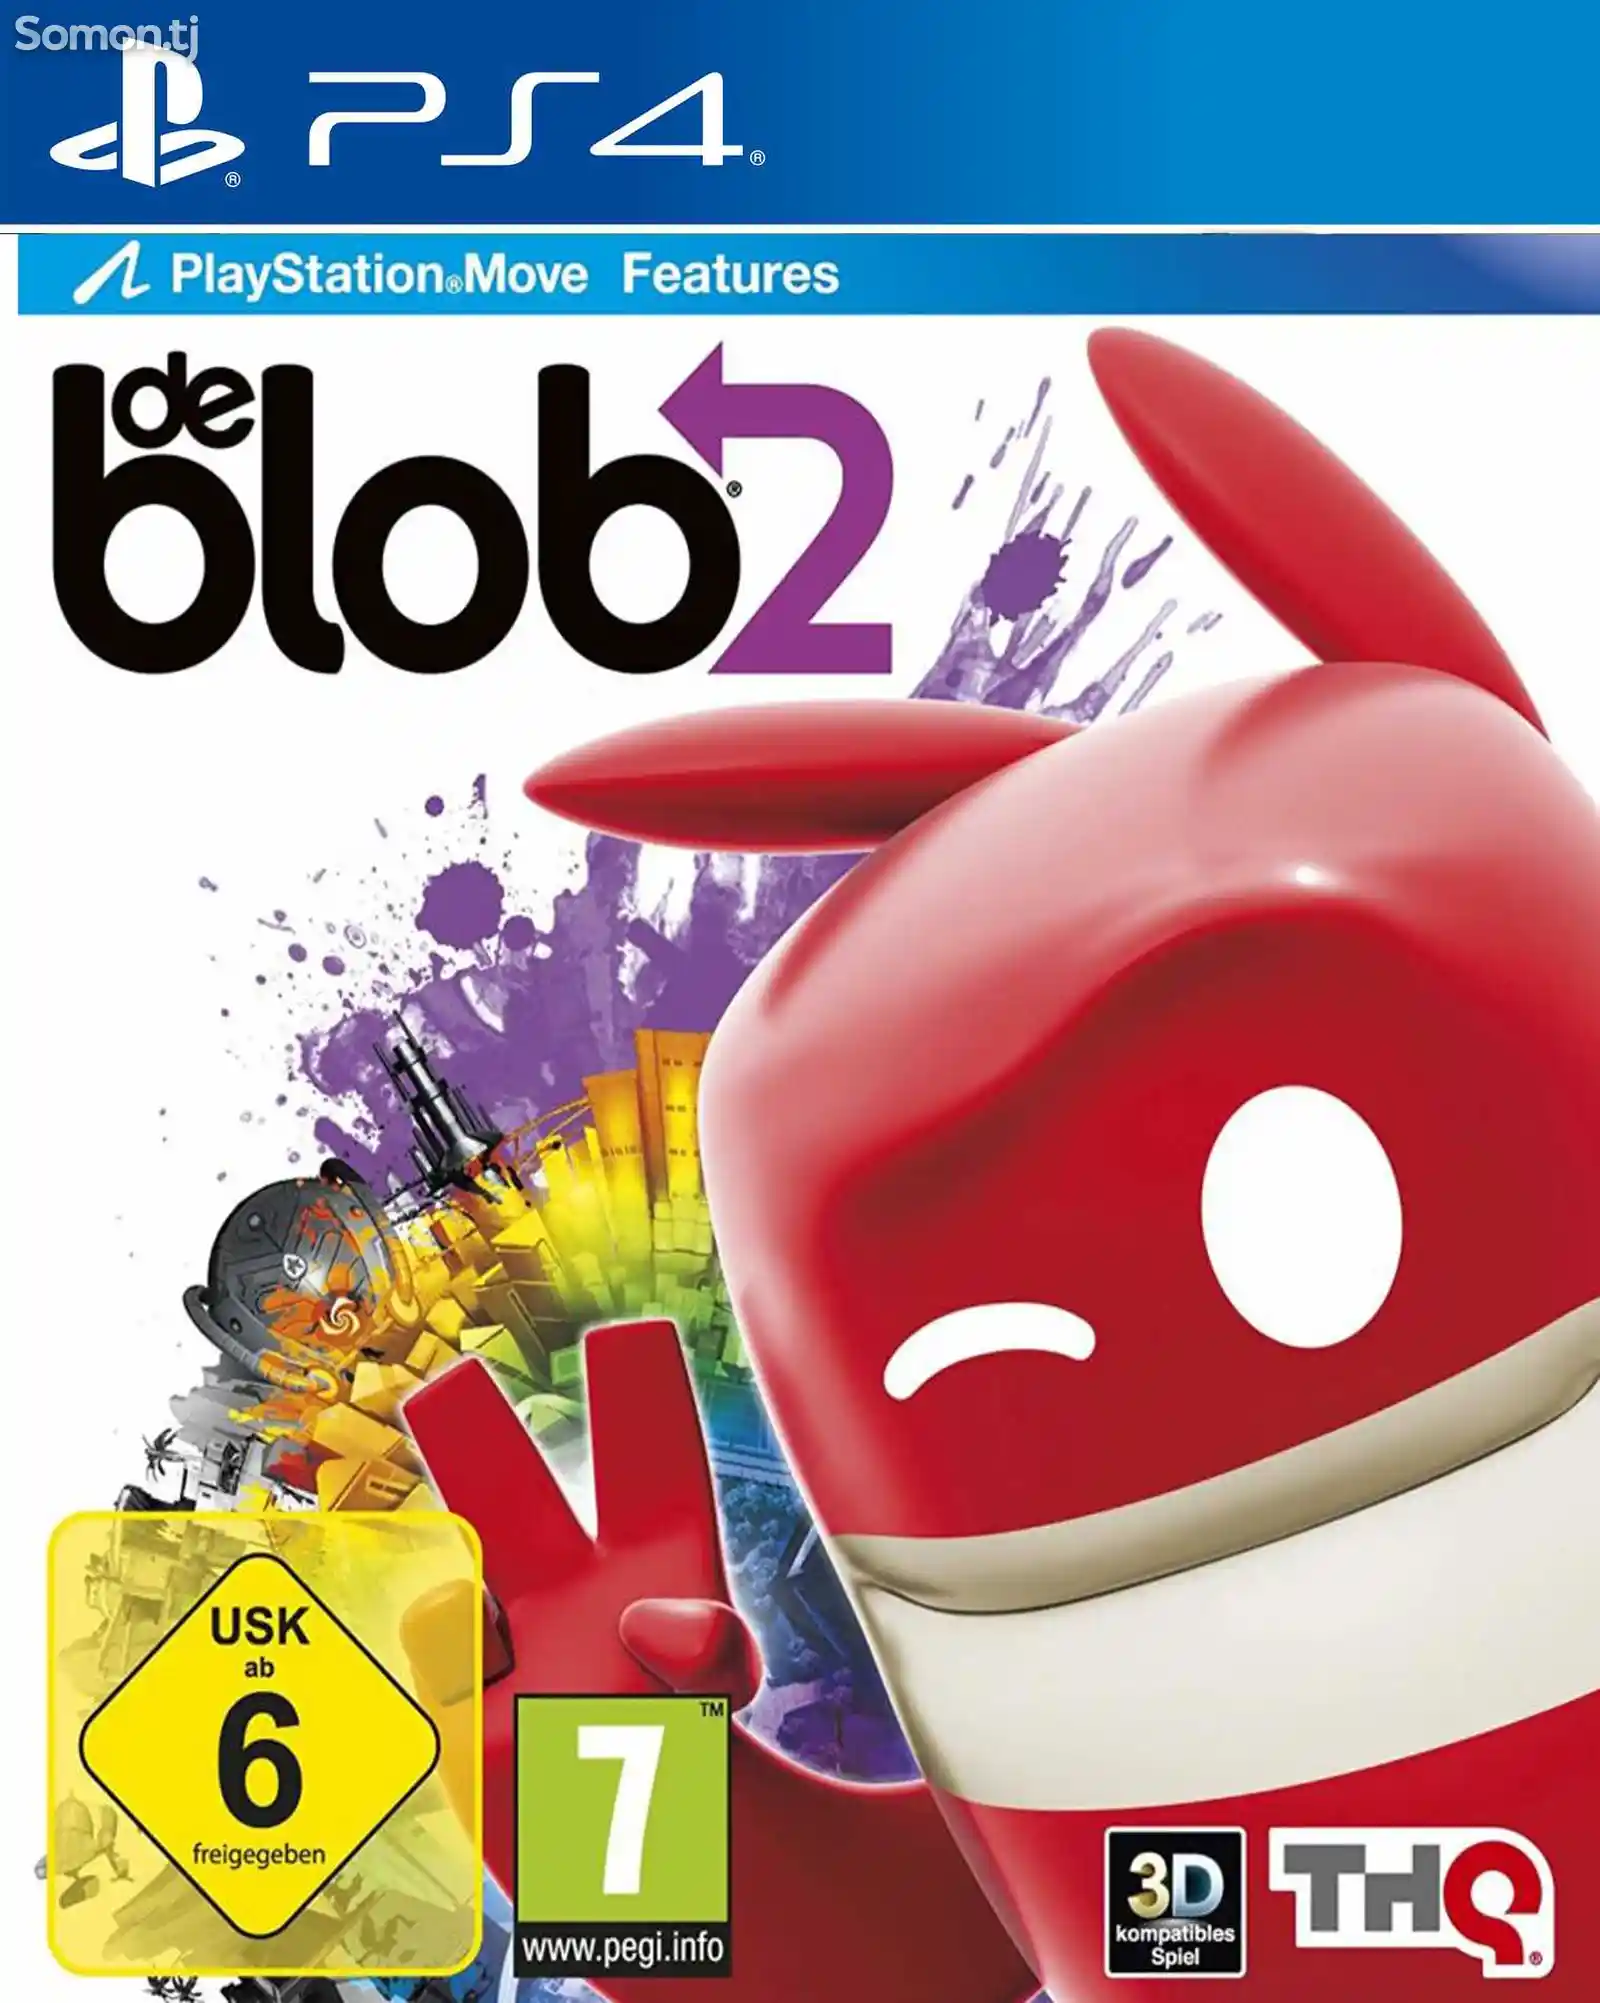 Игра De blob 2 для PS-4 / 5.05 / 6.72 / 7.02 / 7.55 / 9.00 /-1